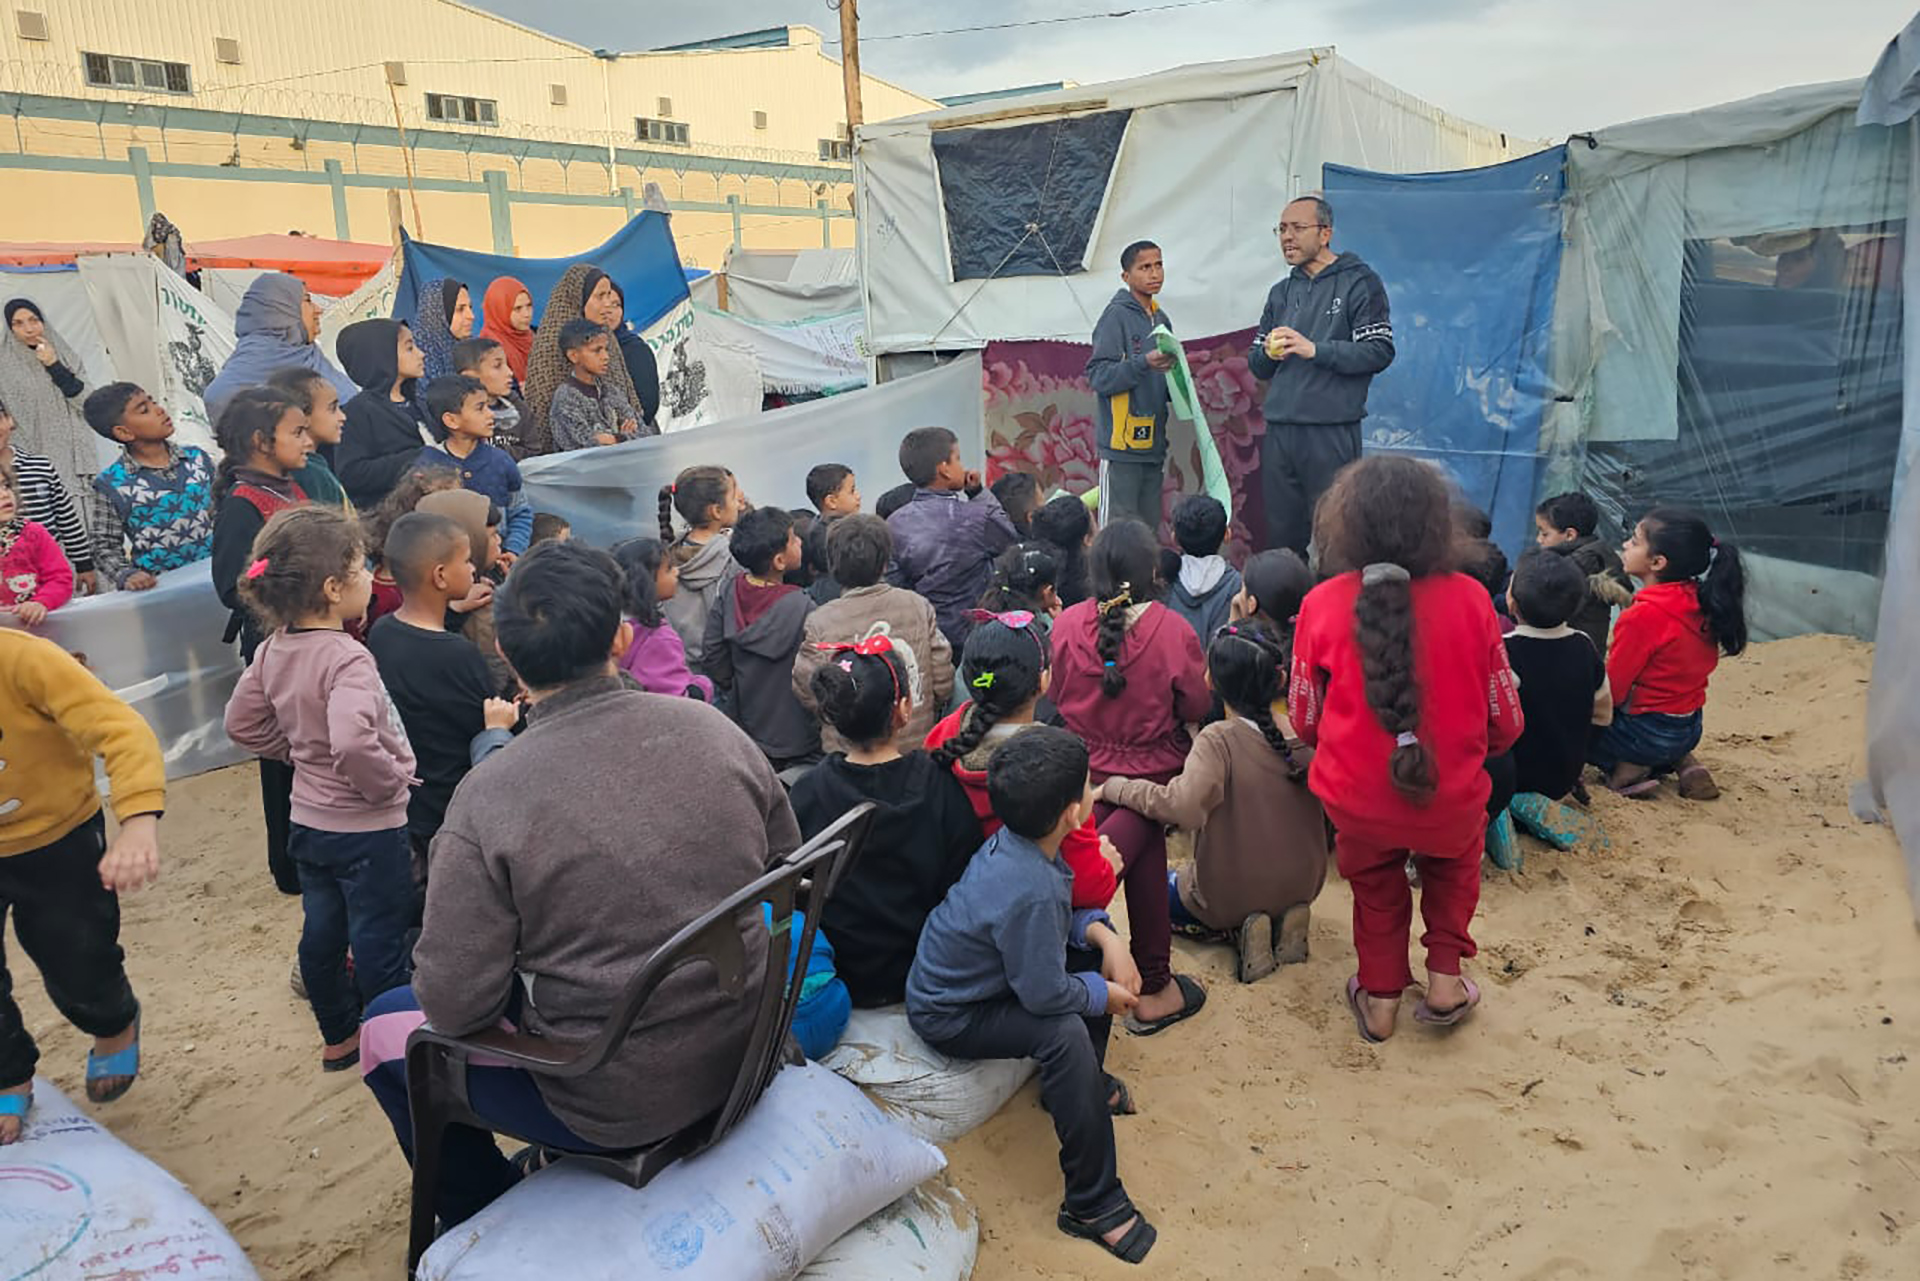 مبادرات تعليمية في غزة تعيد الأمل والحياة للأطفال | سياسة – البوكس نيوز